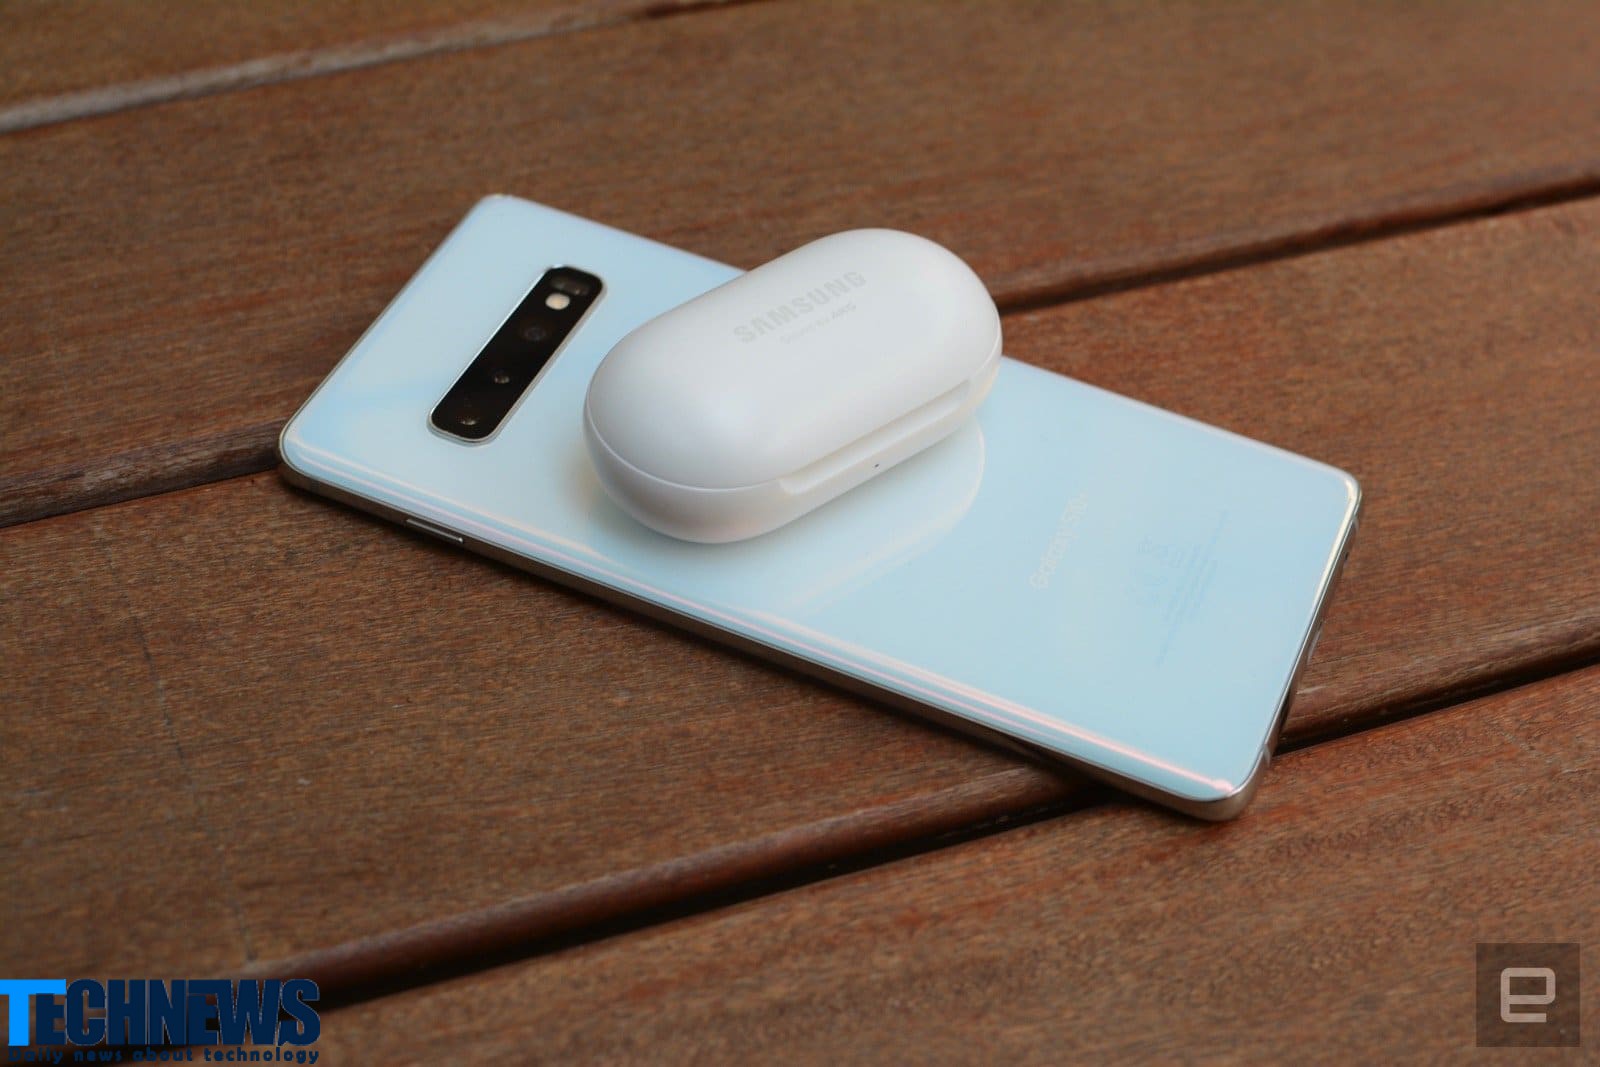 گجت های کوچک با فناوری NFC نیز شارژ خواهند شد